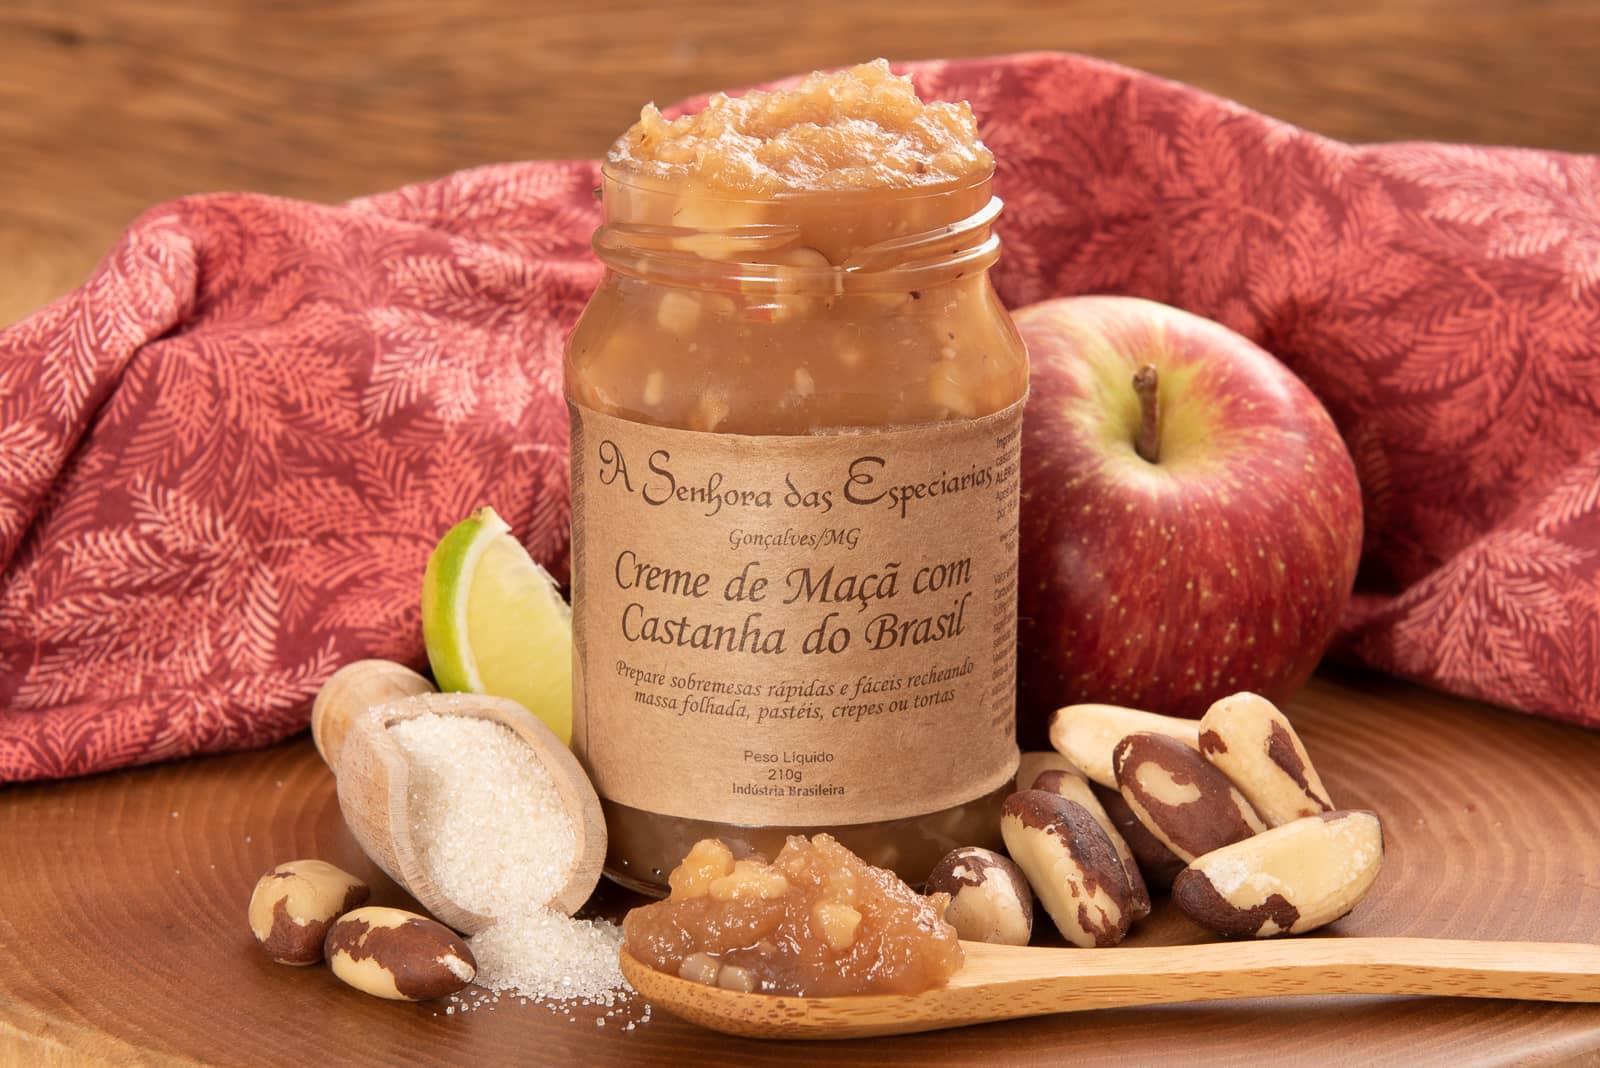 Creme de maçã com castanha do Brasil, fabricado por A Senhora das Especiarias, localizada em Gonçalves e comercializado na loja virtual de e-Especiarias.